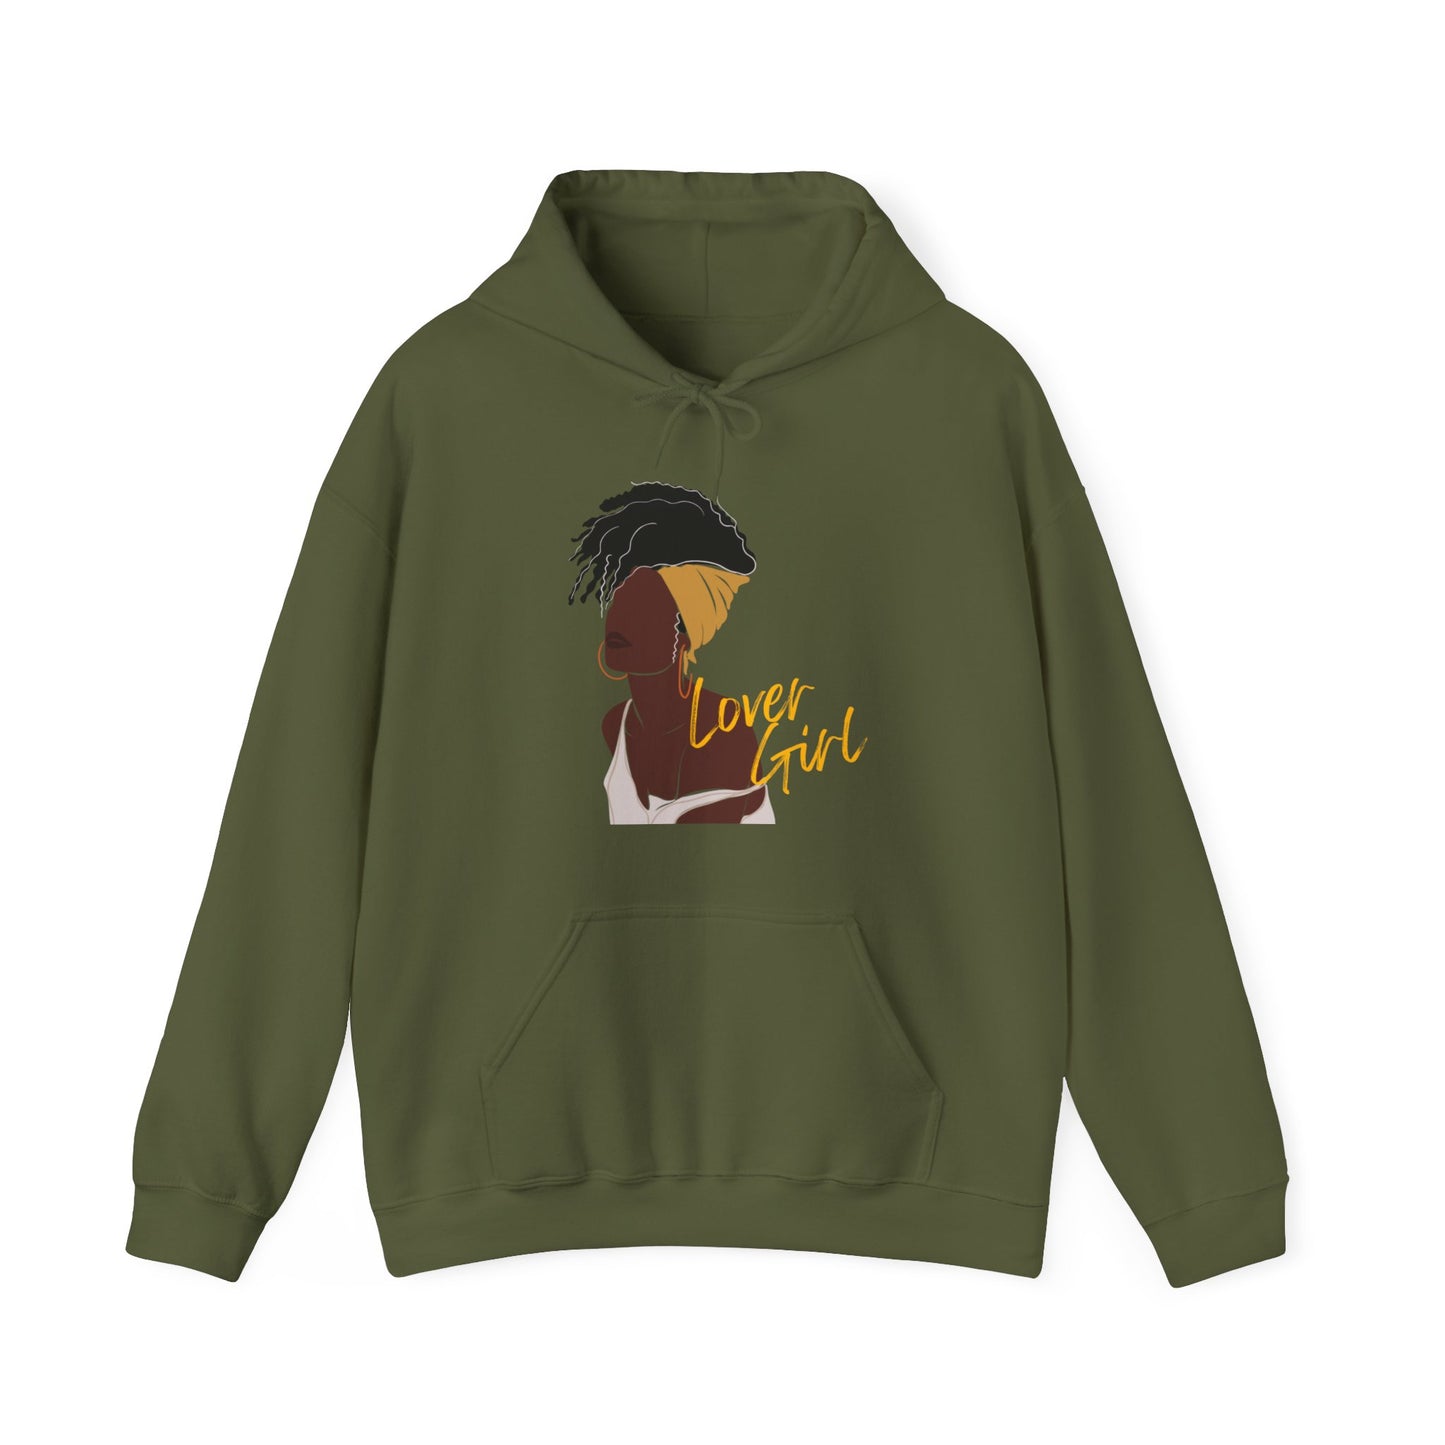 Lover Girl Hooded Sweatshirt